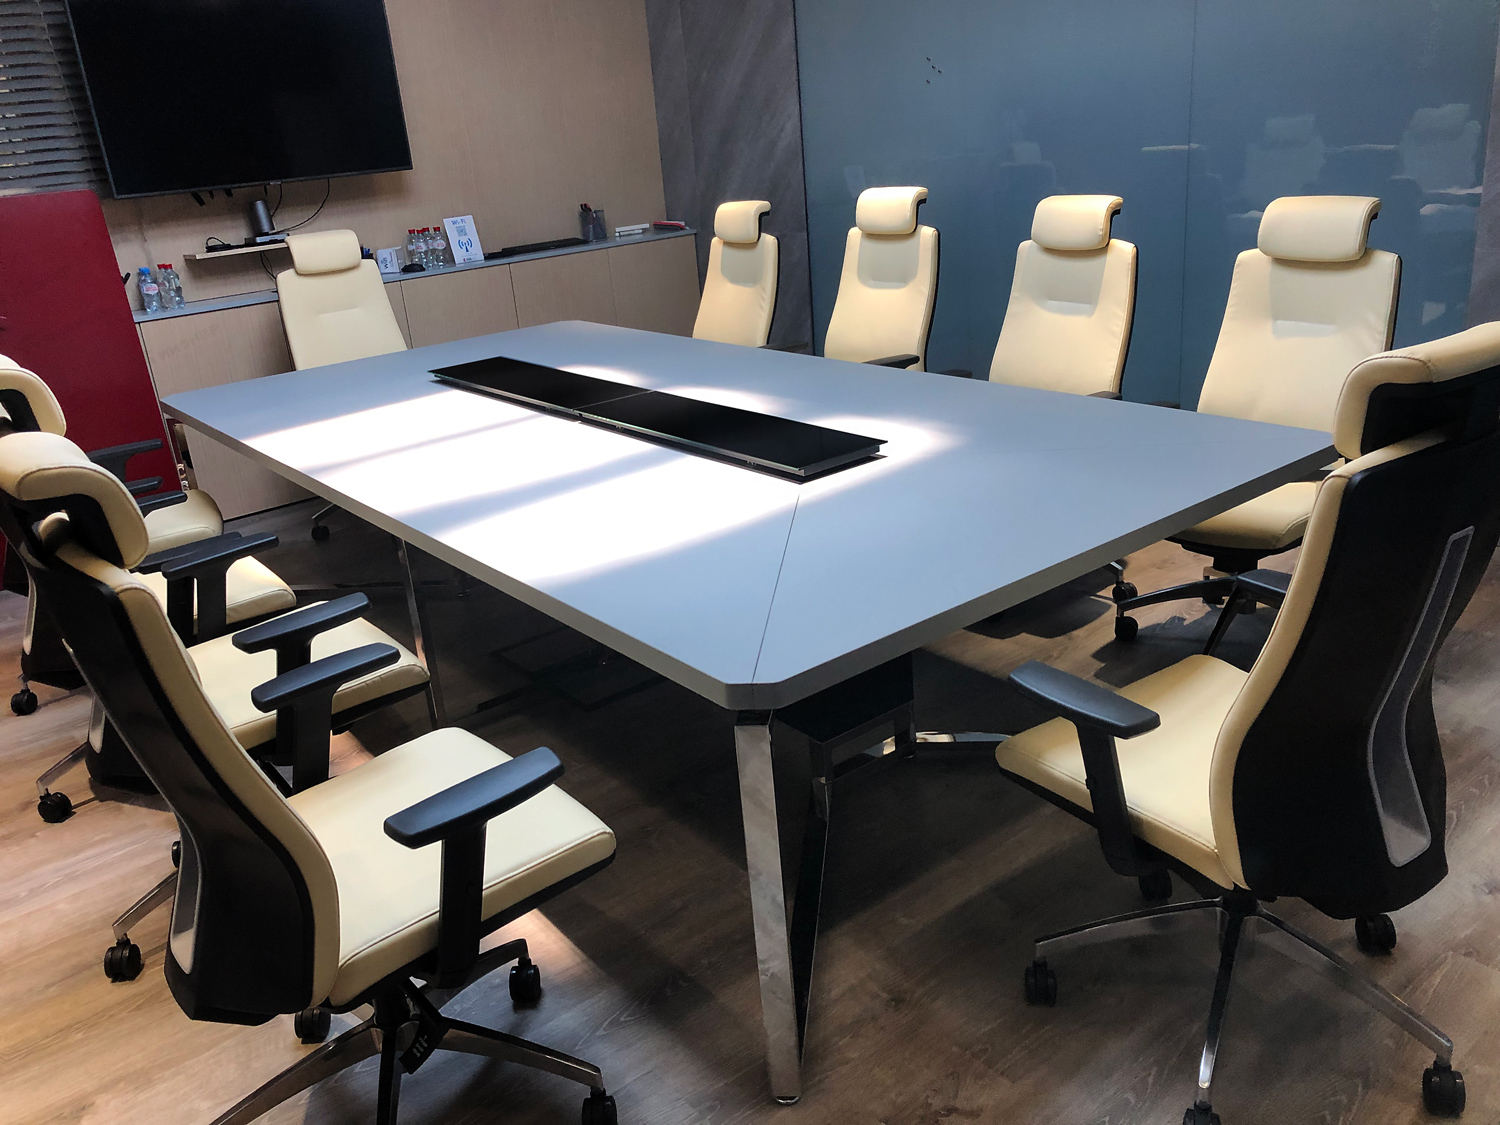 Переговорный стол 3 метра 20 см на 160 см в ширину, суперматовый пластик Fenix HPL, стальные опоры из нержавейки